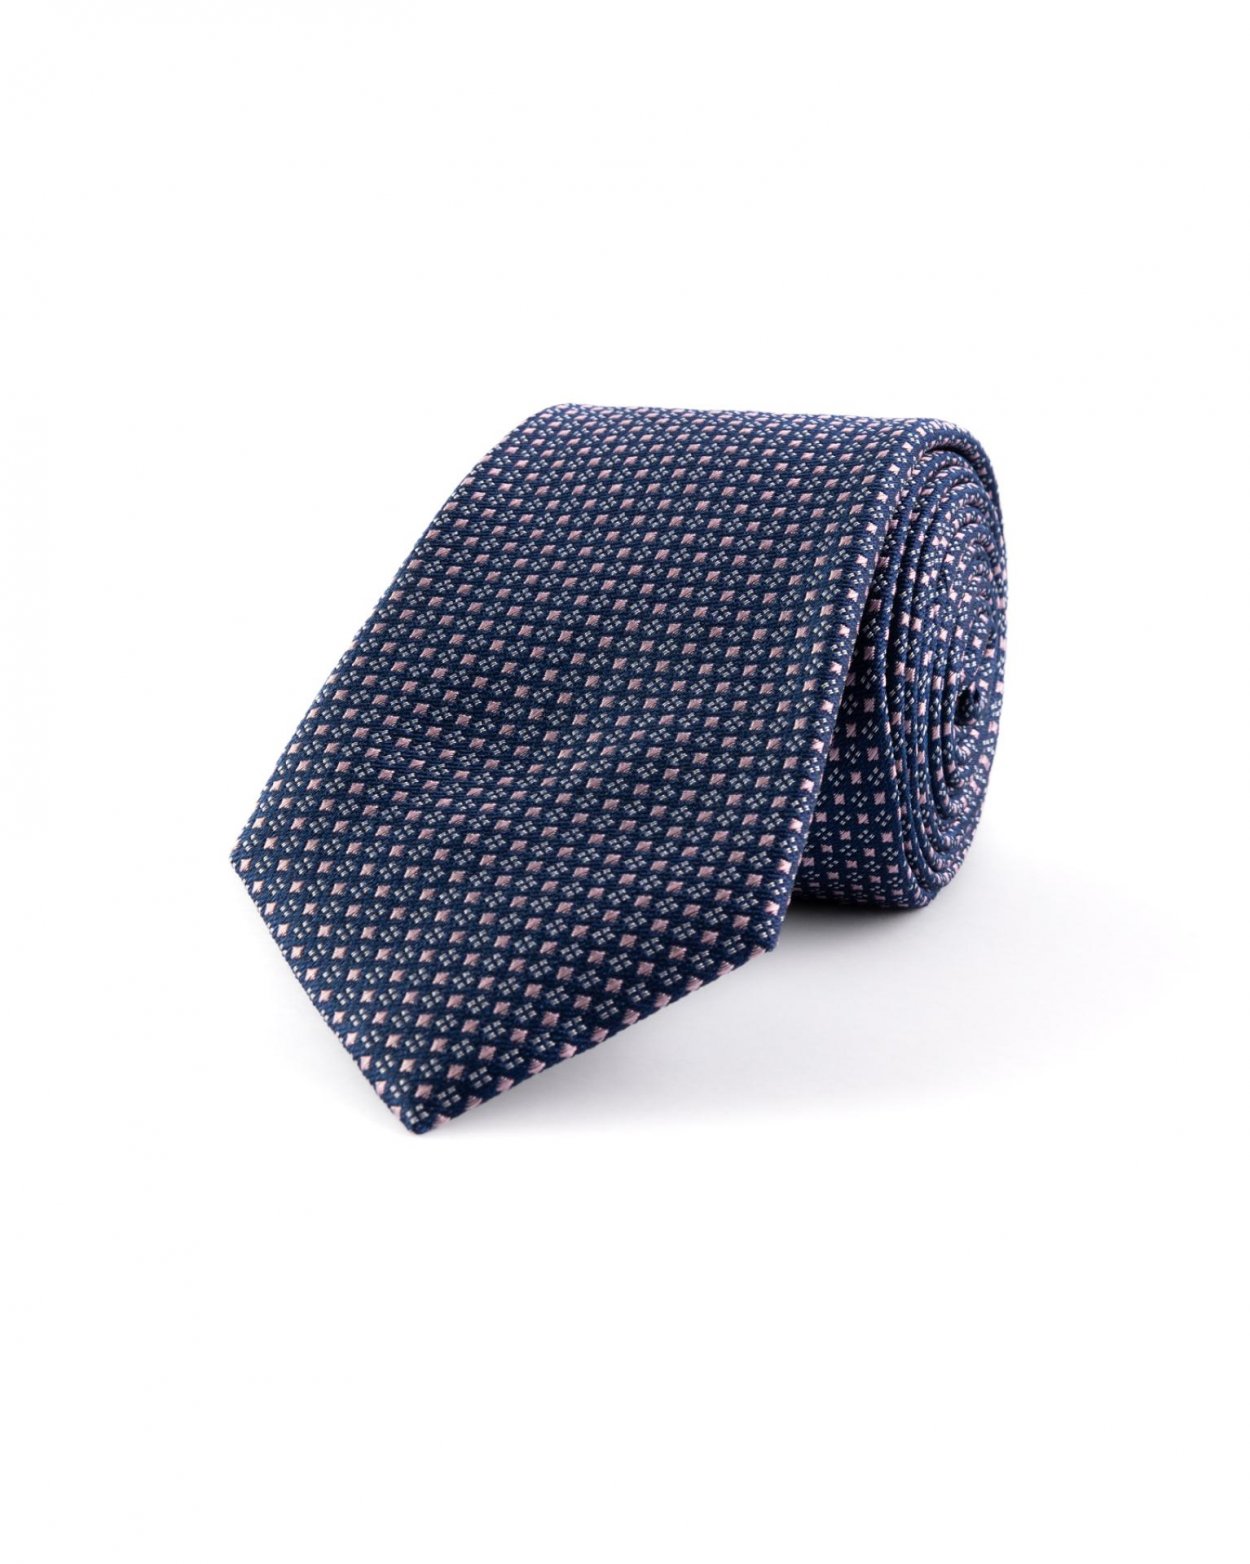 Tmavě modrá hedvábná kravata s jemným vzorem